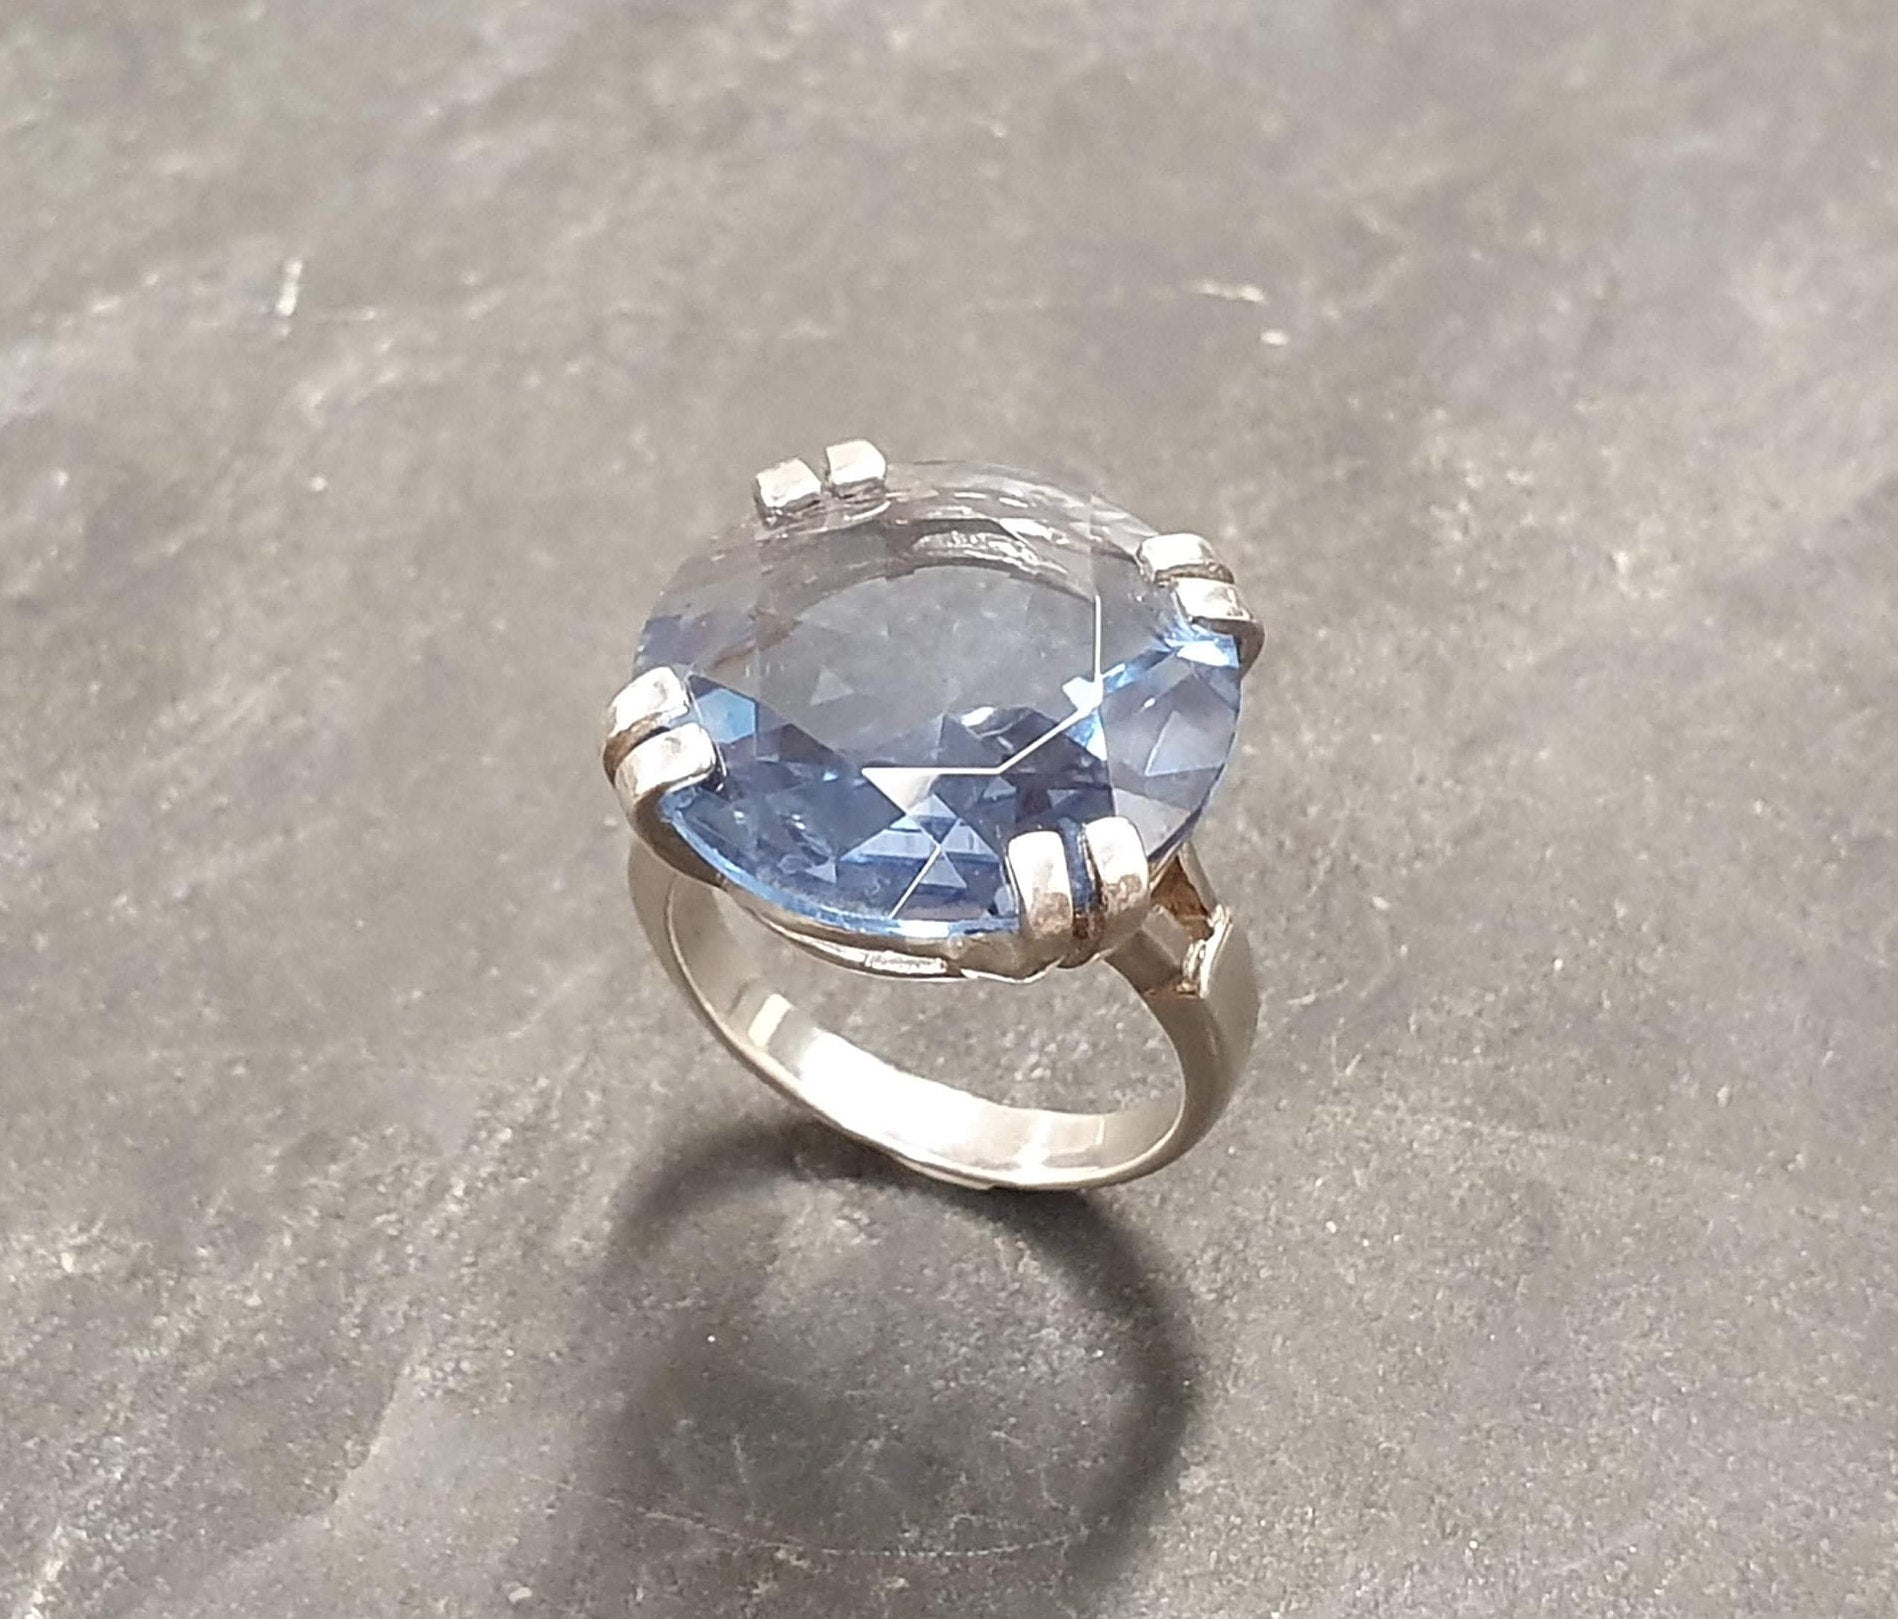 Aquamarine Ring, Created Aquamarine, Blue Vintage Ring, Blue Diamond Ring, Vintage Rings, Blue Ring, Solid Silver Ring, Large Aquamarine